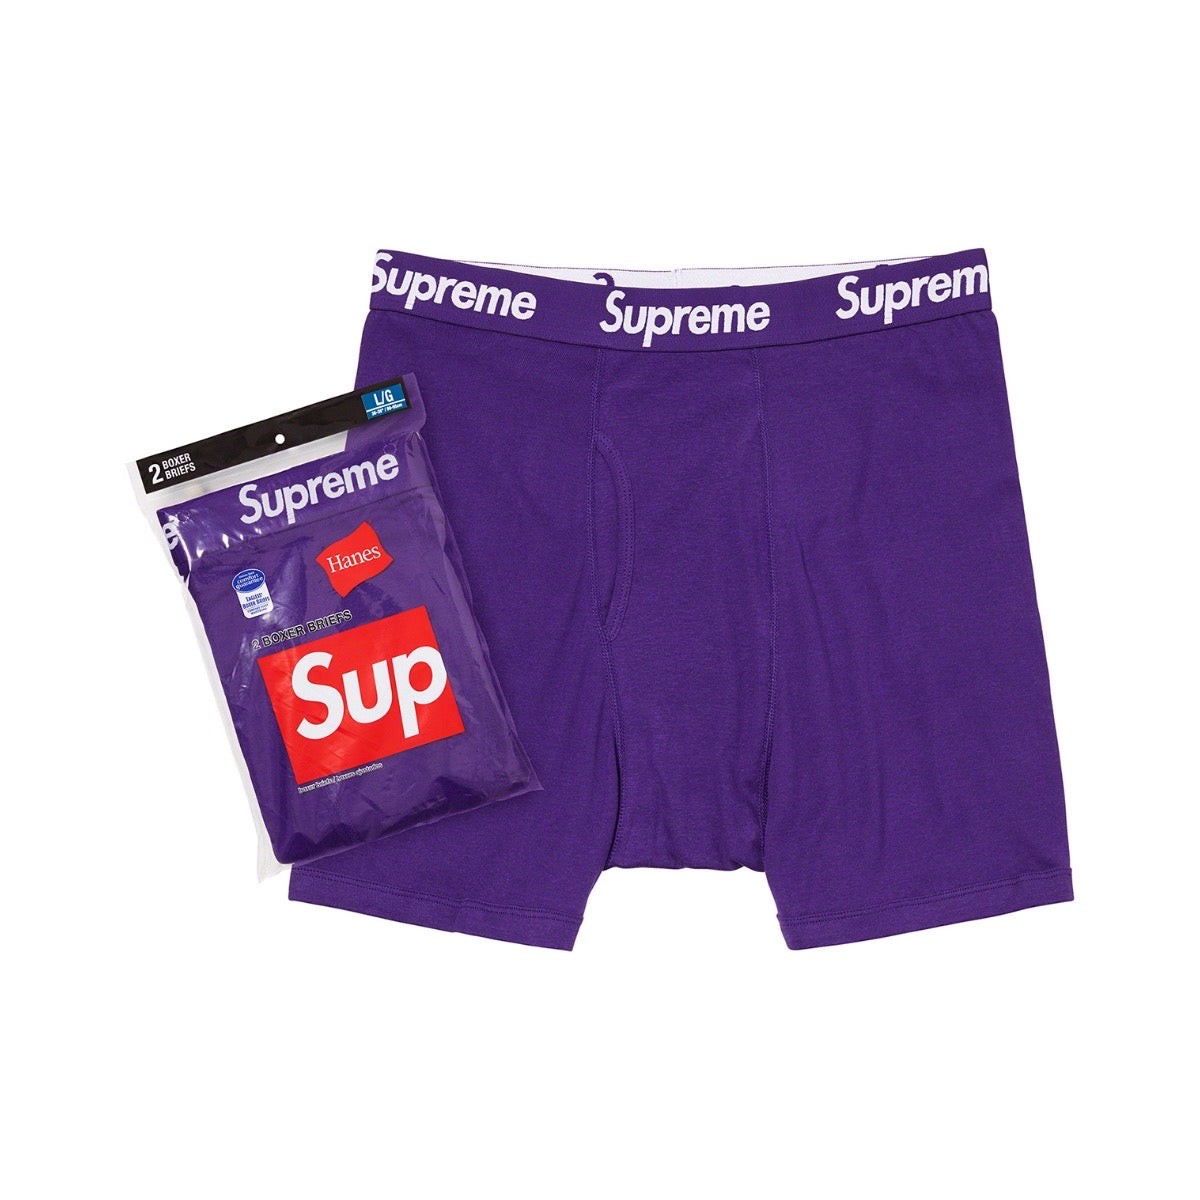 Supreme Hanes Boxer Briefs (2 Pack) Purple Supreme